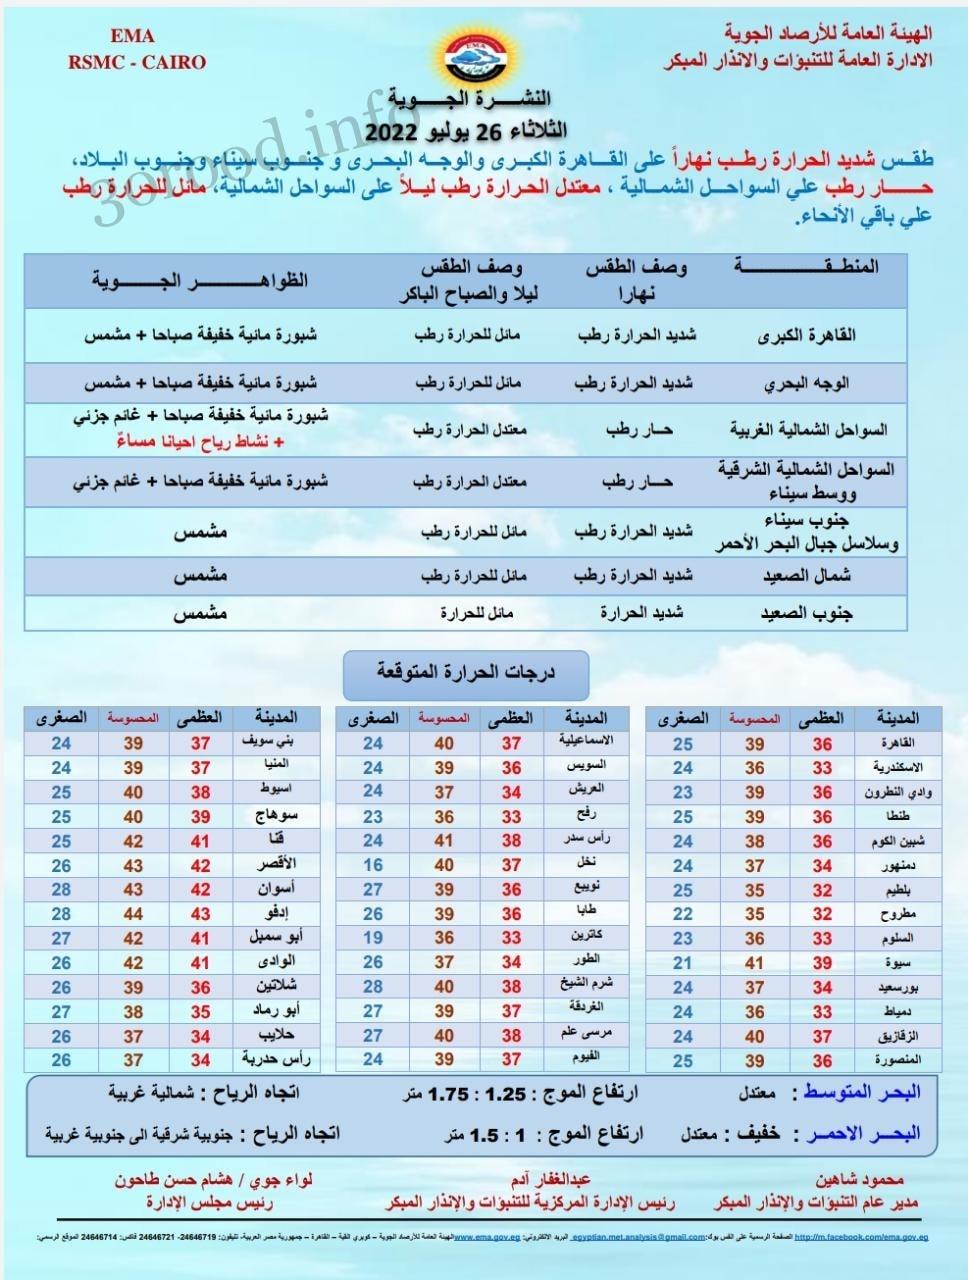 اخبار الطقس فى مصر الثلاثاء 26 يوليو 2022 النشرة الجوية فى مصر